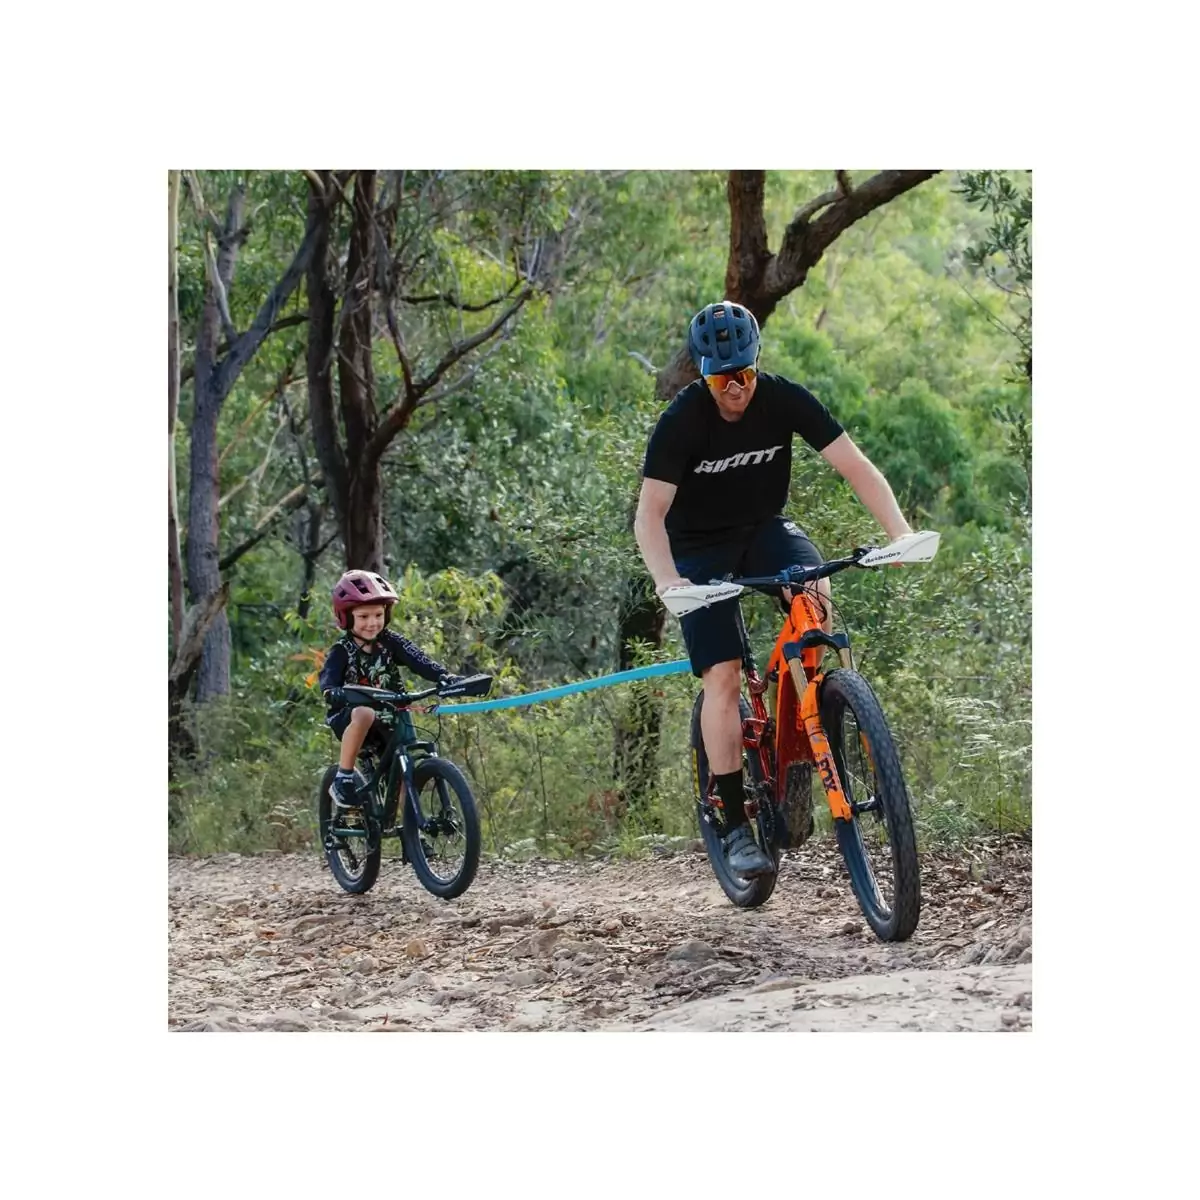 Bicicleta para niños Cuerda de remolque Seguridad Bicicleta elástica Correa  de remolque Bicicleta Cuerda de remolque